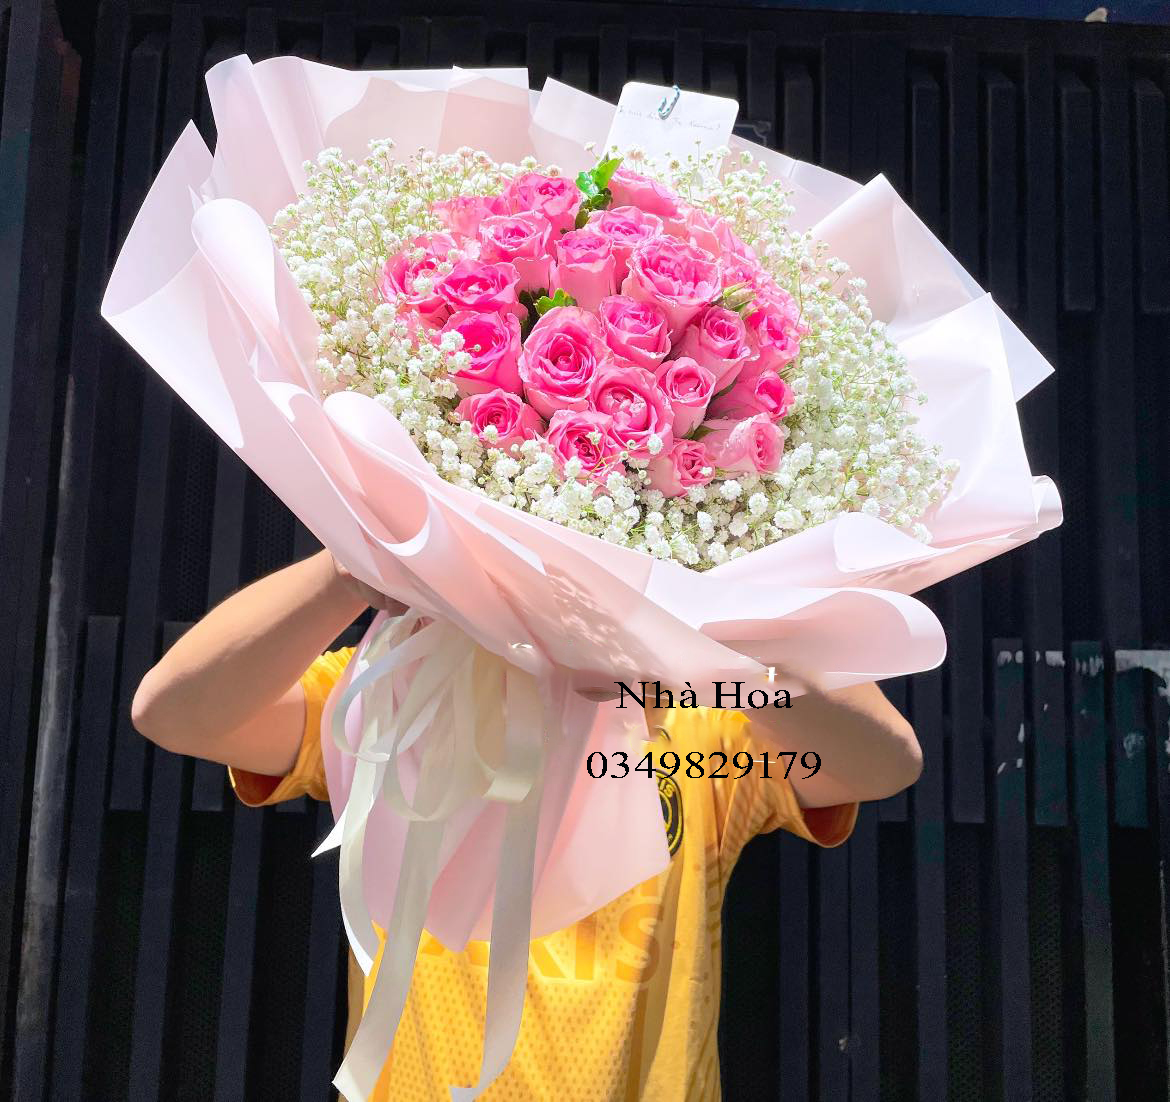 Shop hoa tươi quận Củ Chi giá rẻ đẹp và chất lượng tại Hồ Chí Minh